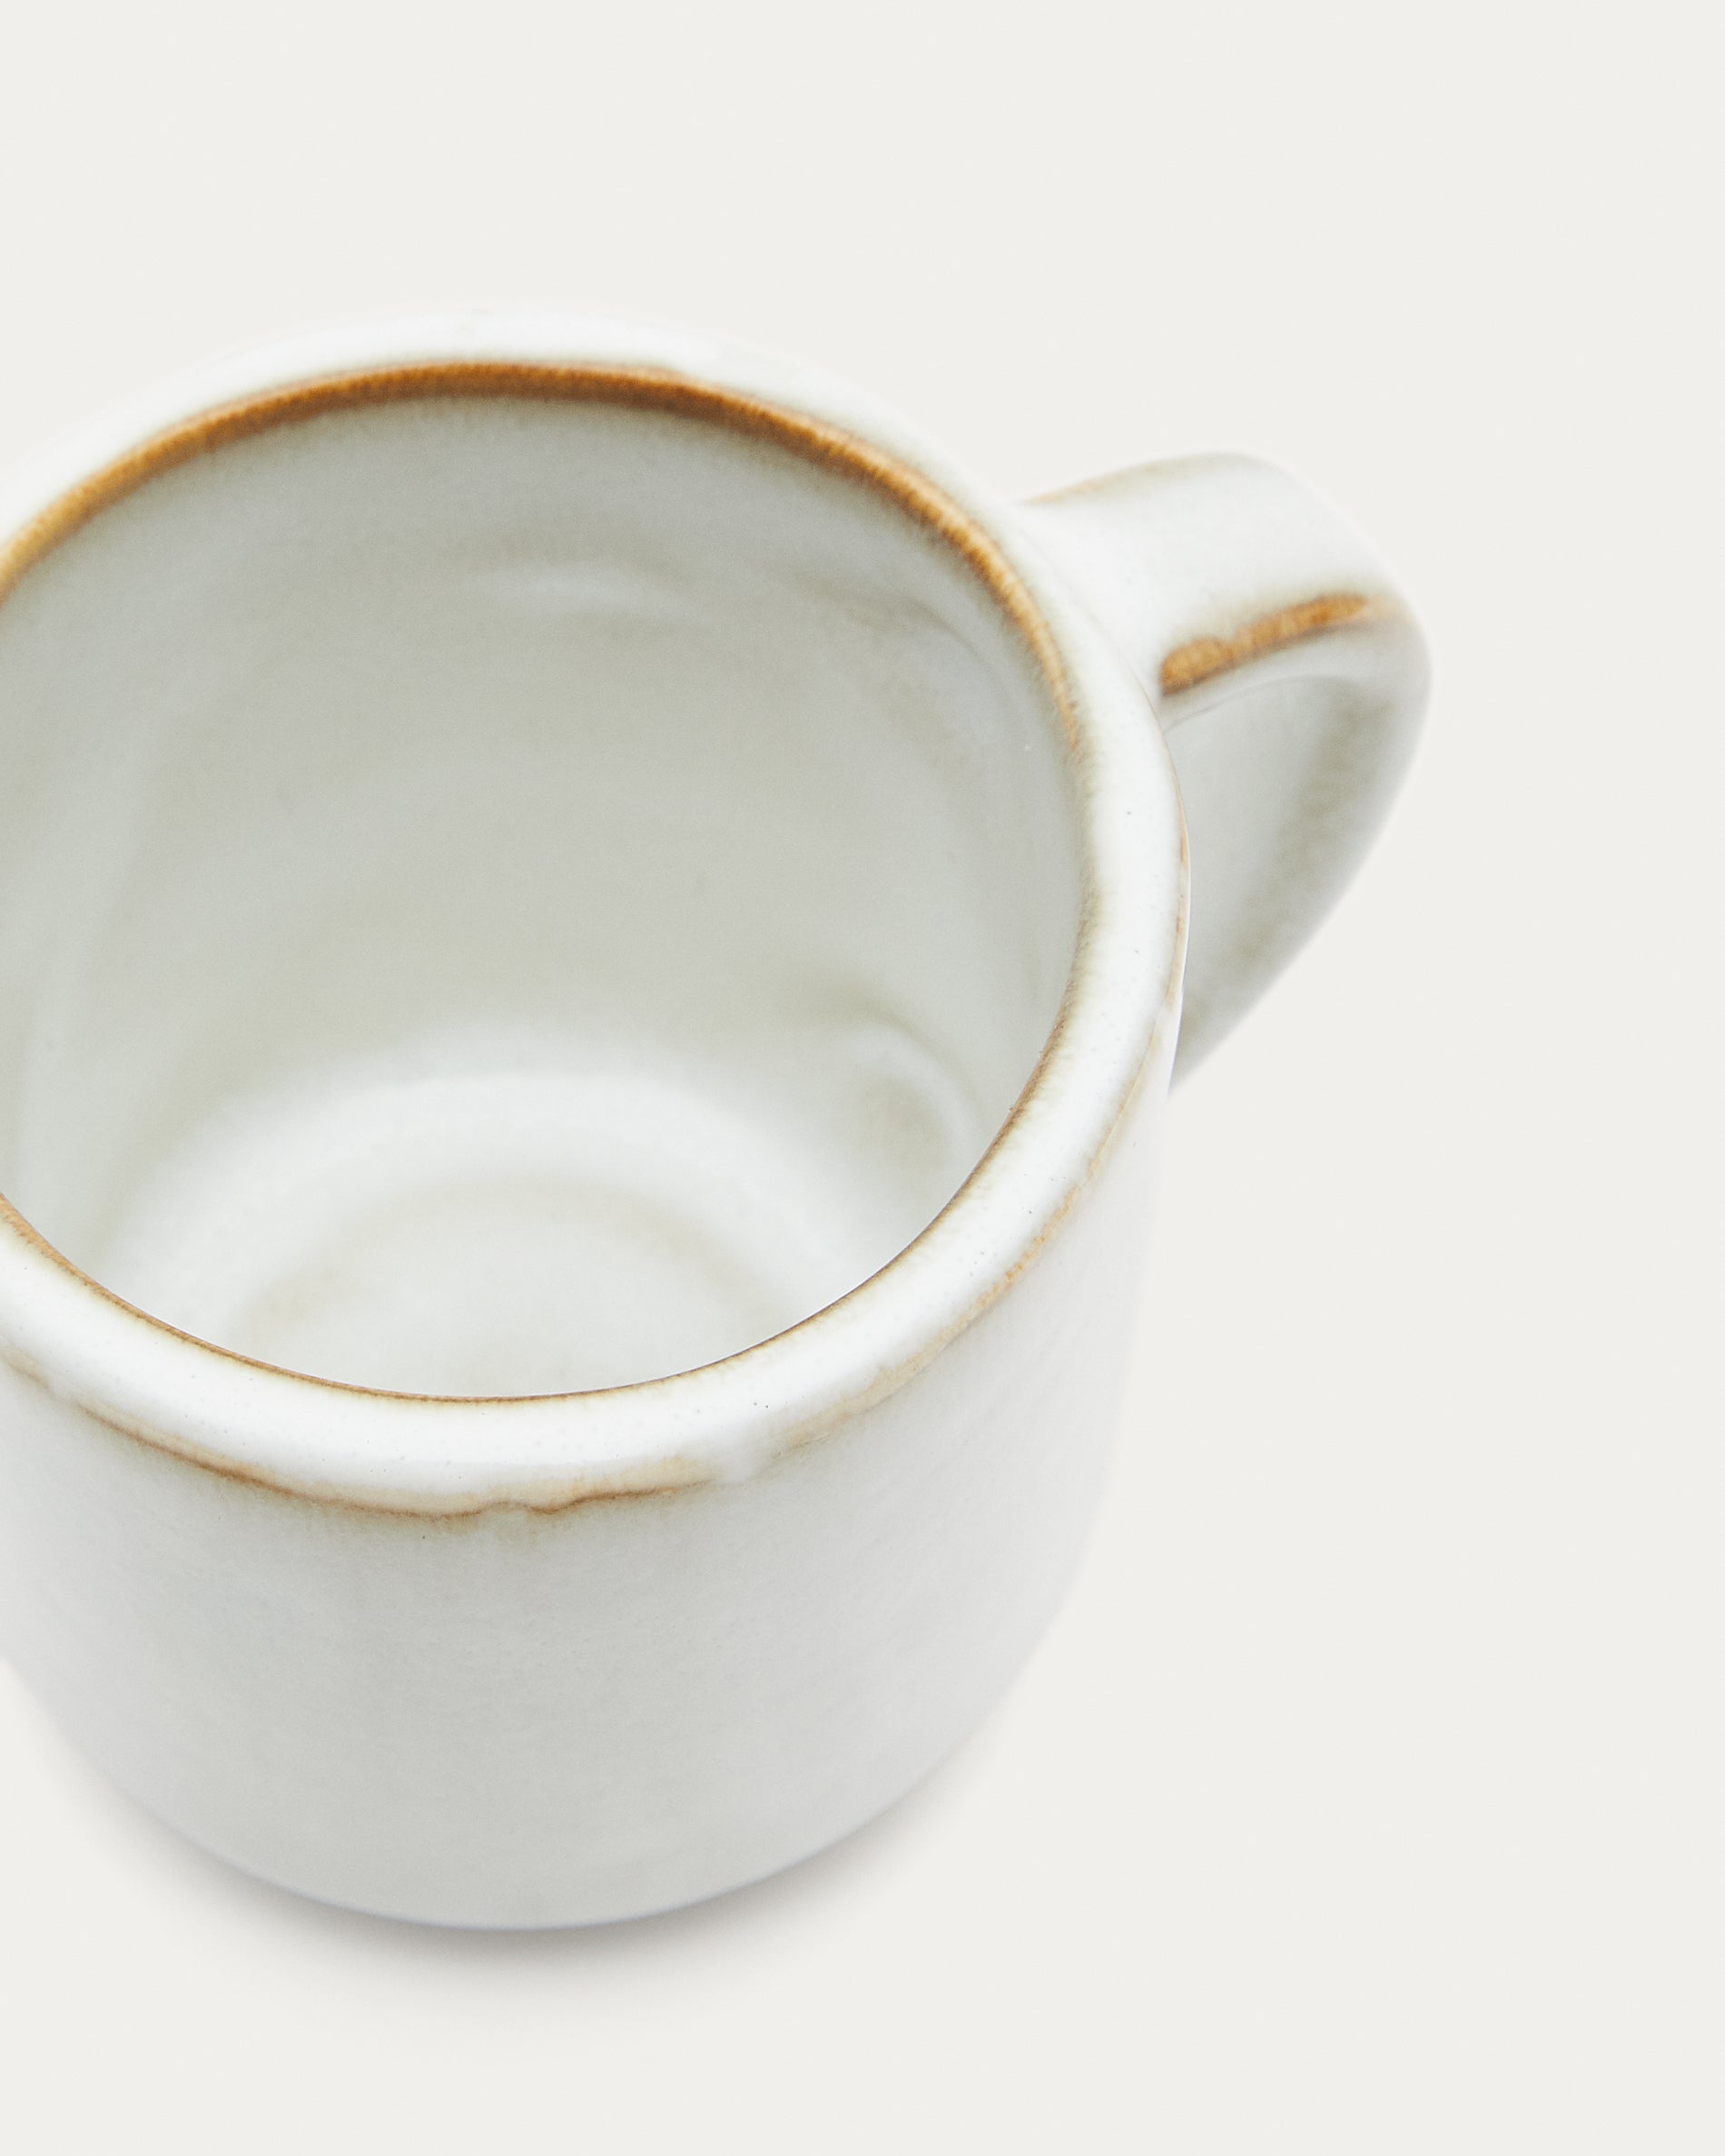 Serni white ceramic cup